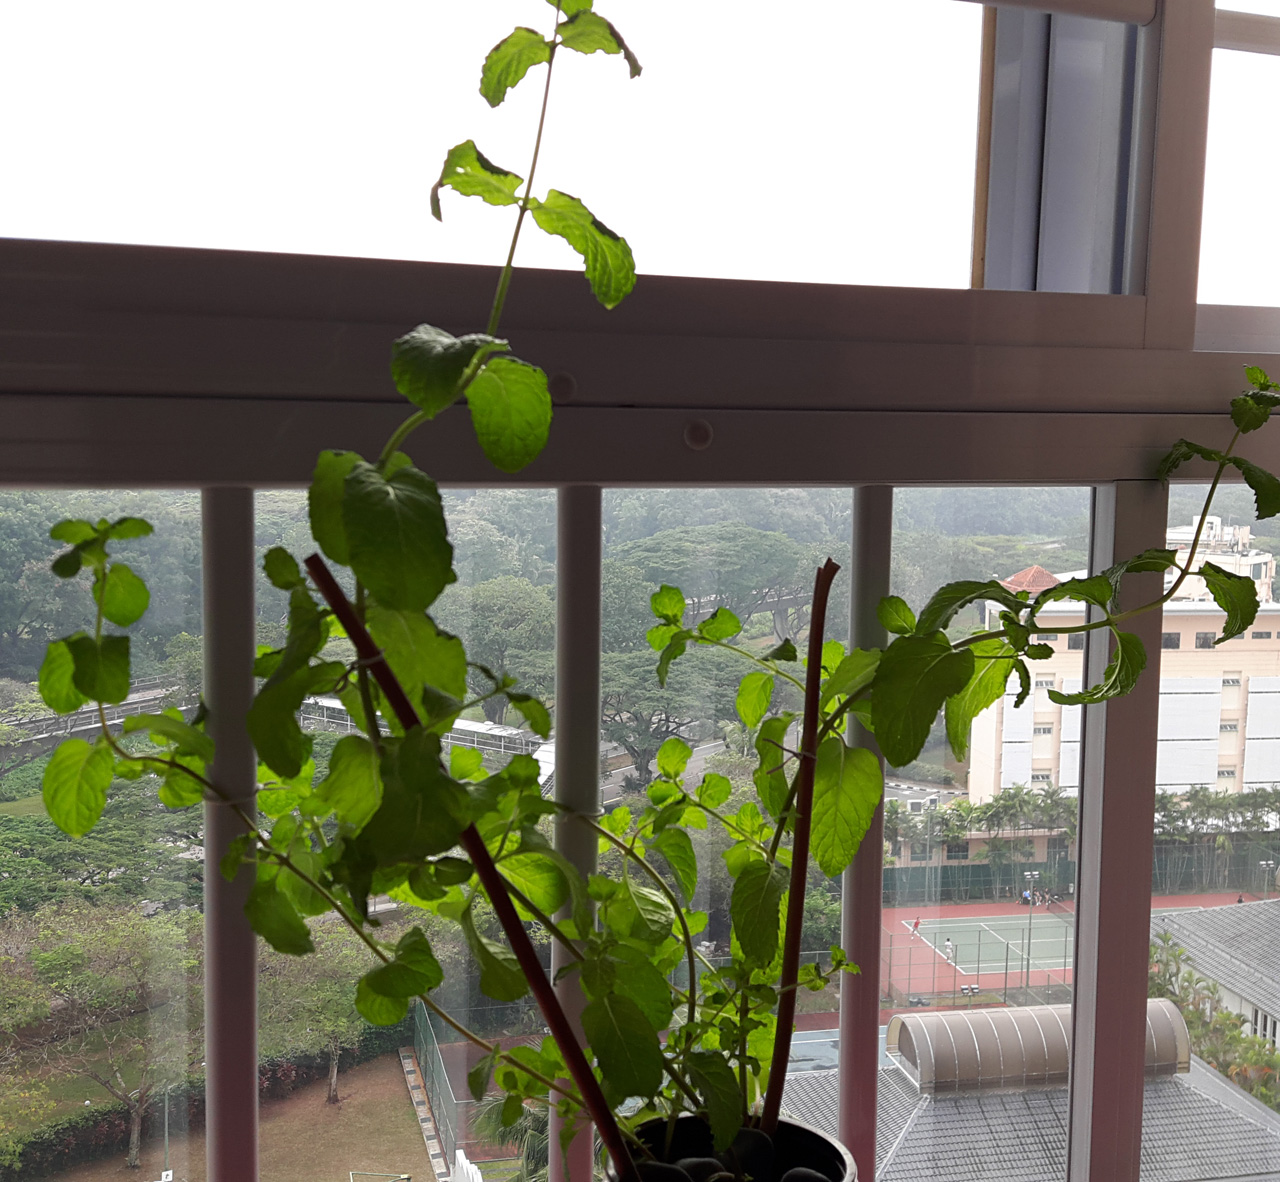 My little mint plant